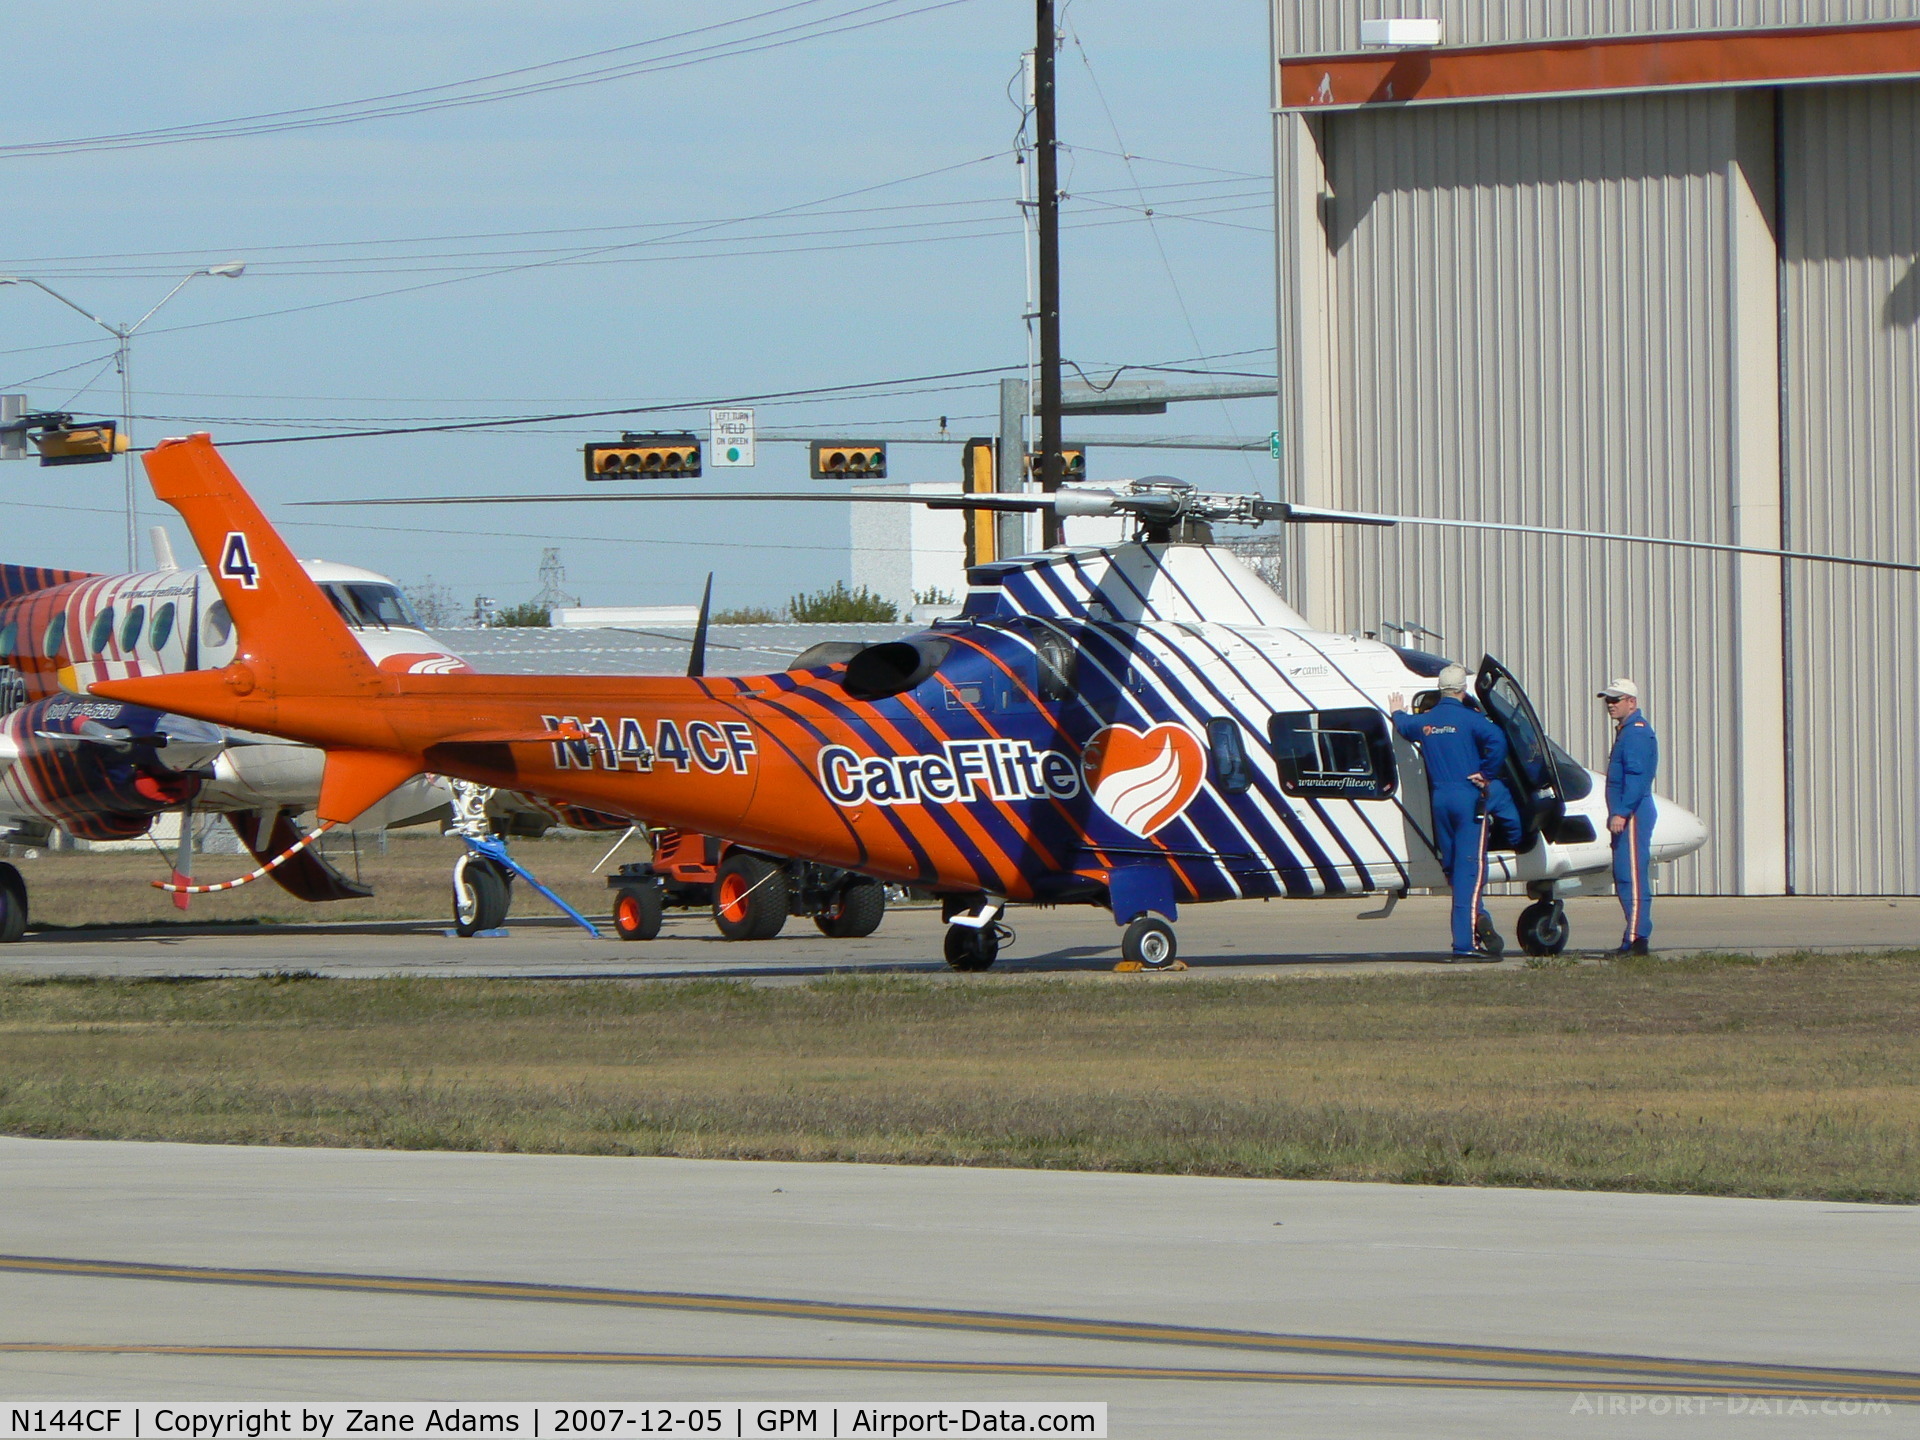 N144CF, 2002 Agusta A-109E C/N 11144, Careflite At Grand Prairie Municipal